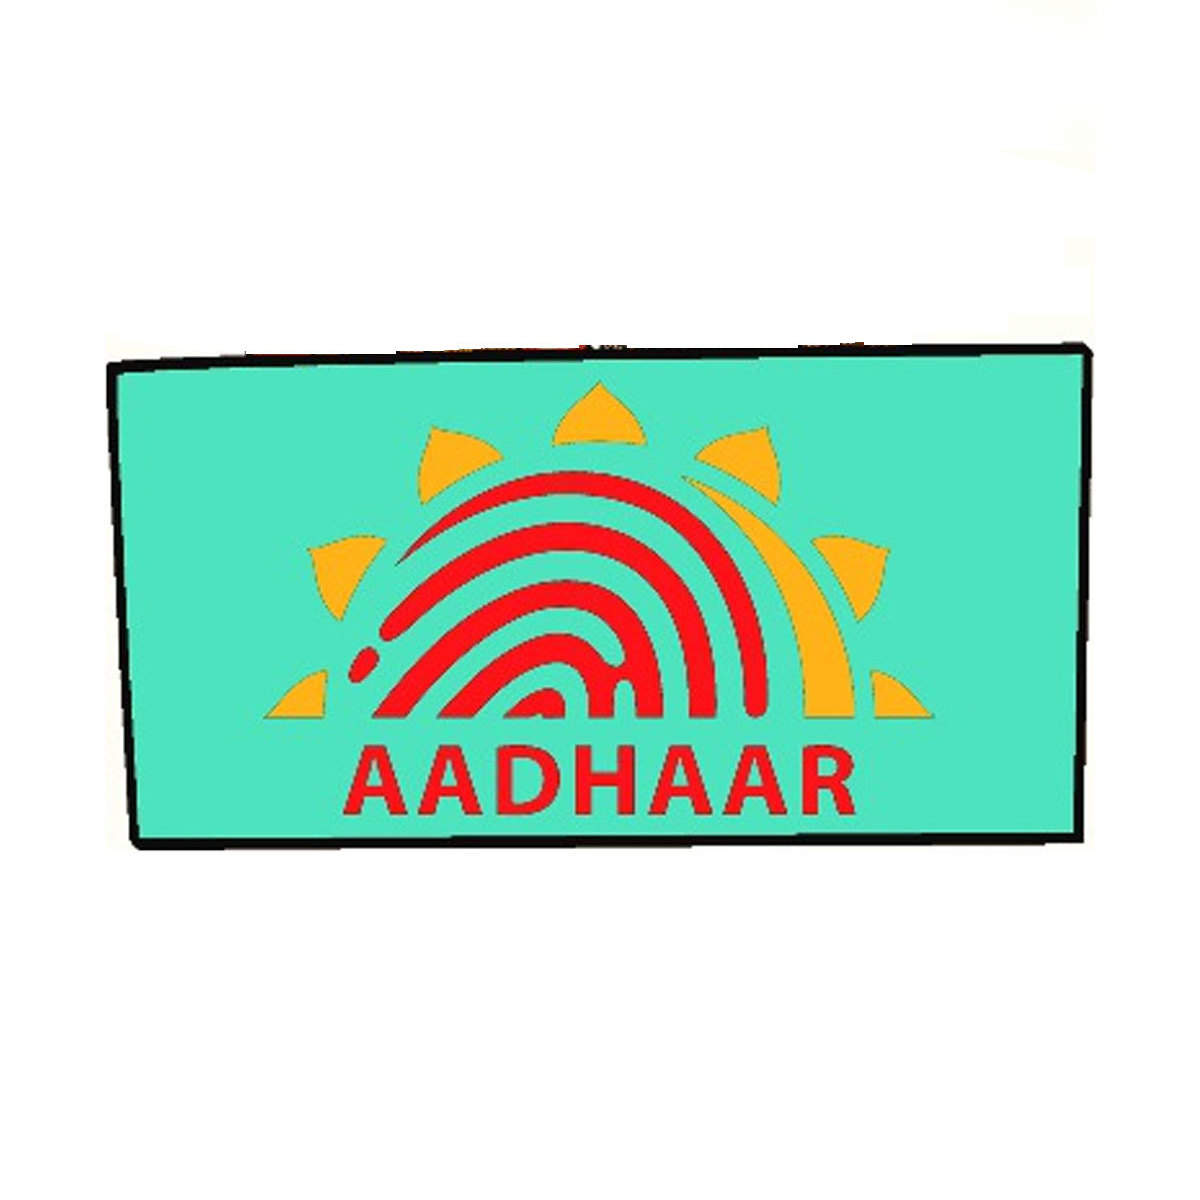 Aadhaar वेरिफिकेशन से जुड़ी आपके काम की 5 बातें, इसके बाद रहेंगे टेंशन फ्री  – News18 हिंदी